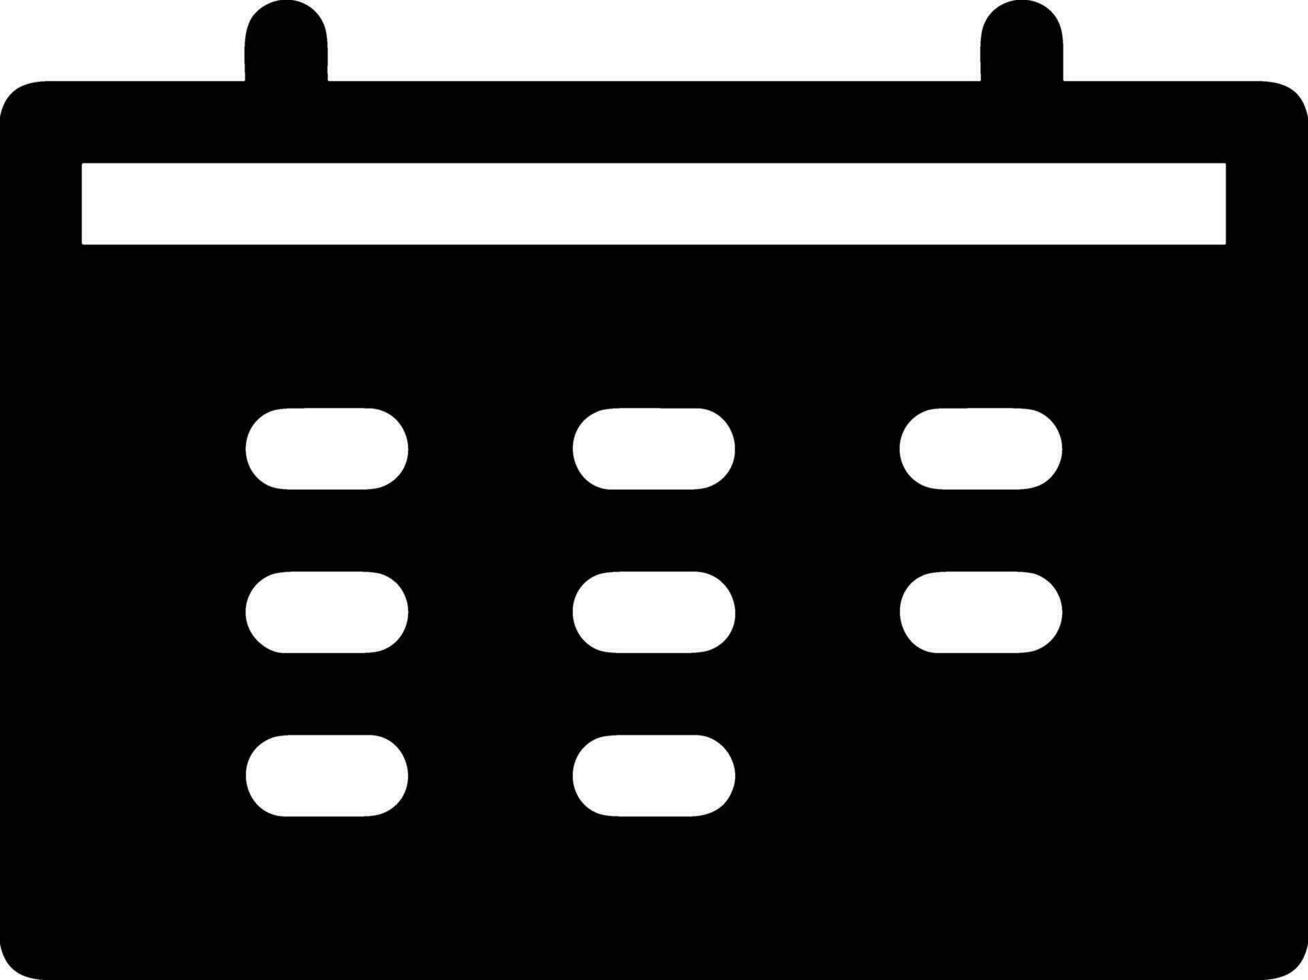 calendario programma icona simbolo vettore Immagine. illustrazione di il moderno appuntamento promemoria ordine del giorno simbolo grafico design Immagine